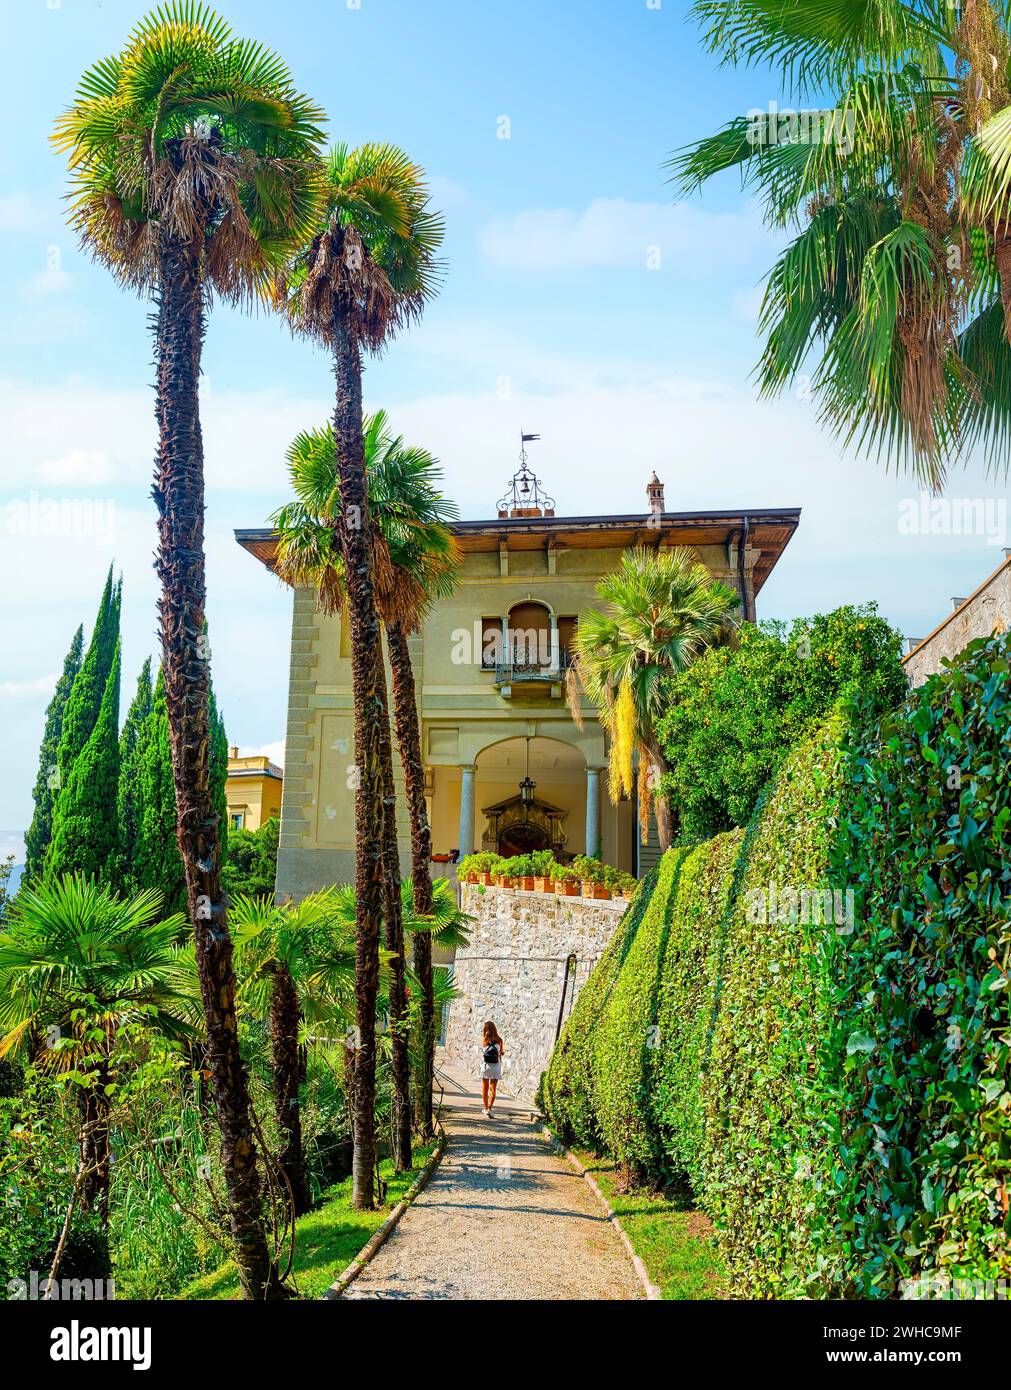 Vue sur le lac de Côme depuis la villa Monastero, Italie Banque D'Images